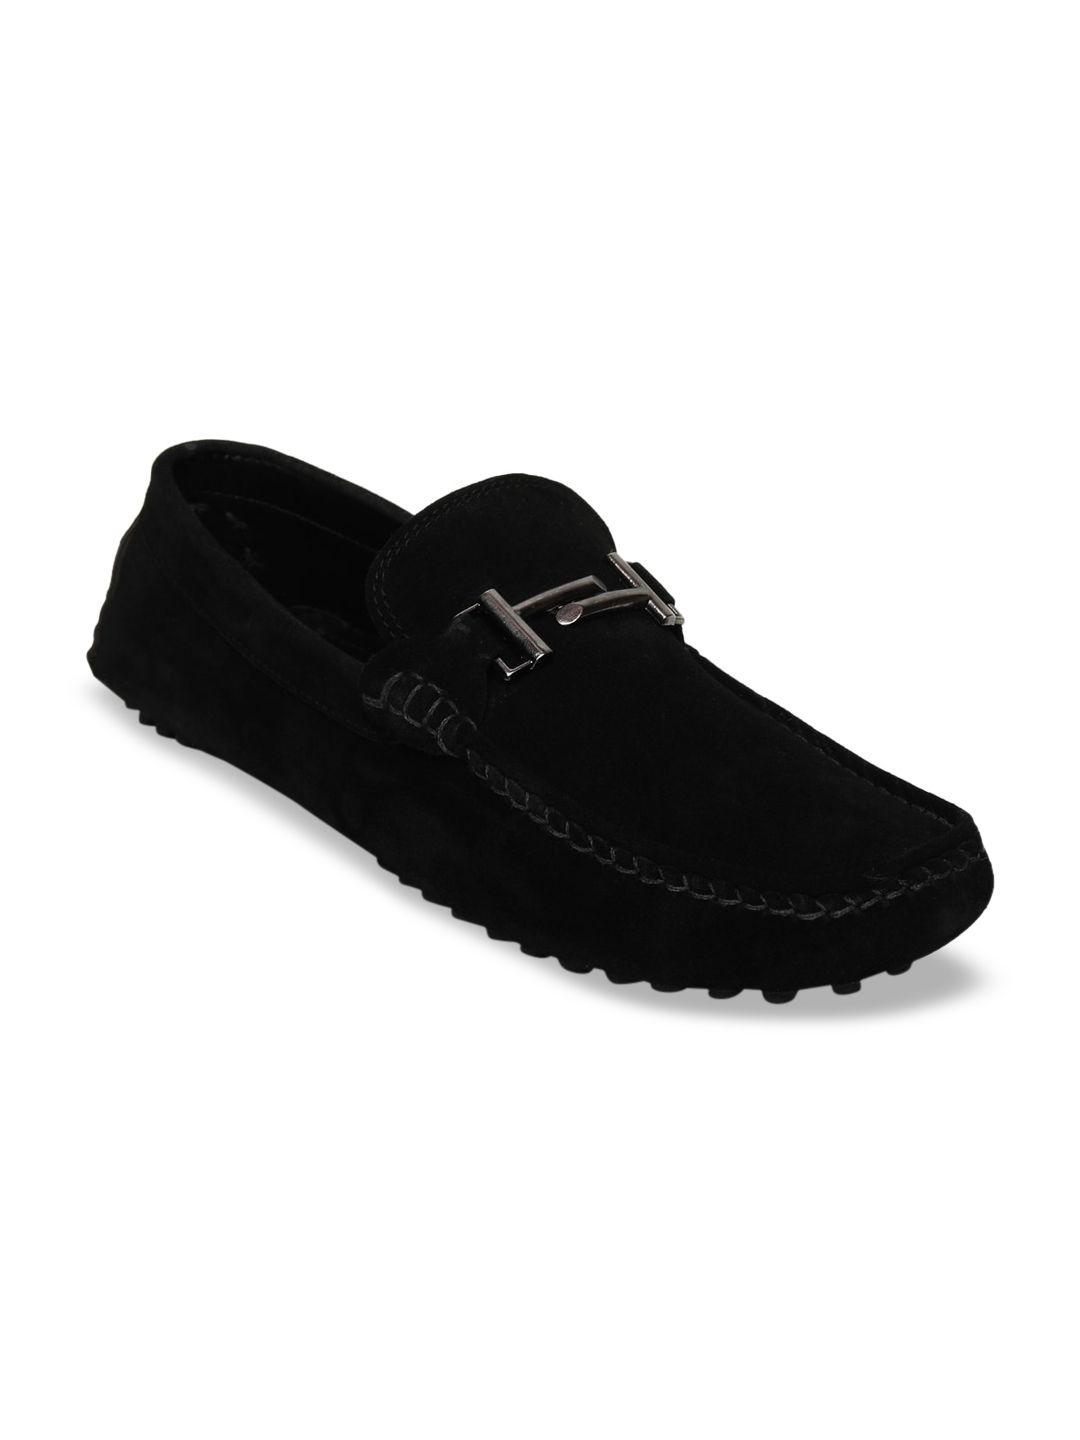 louis stitch men black solid suede driving shoes